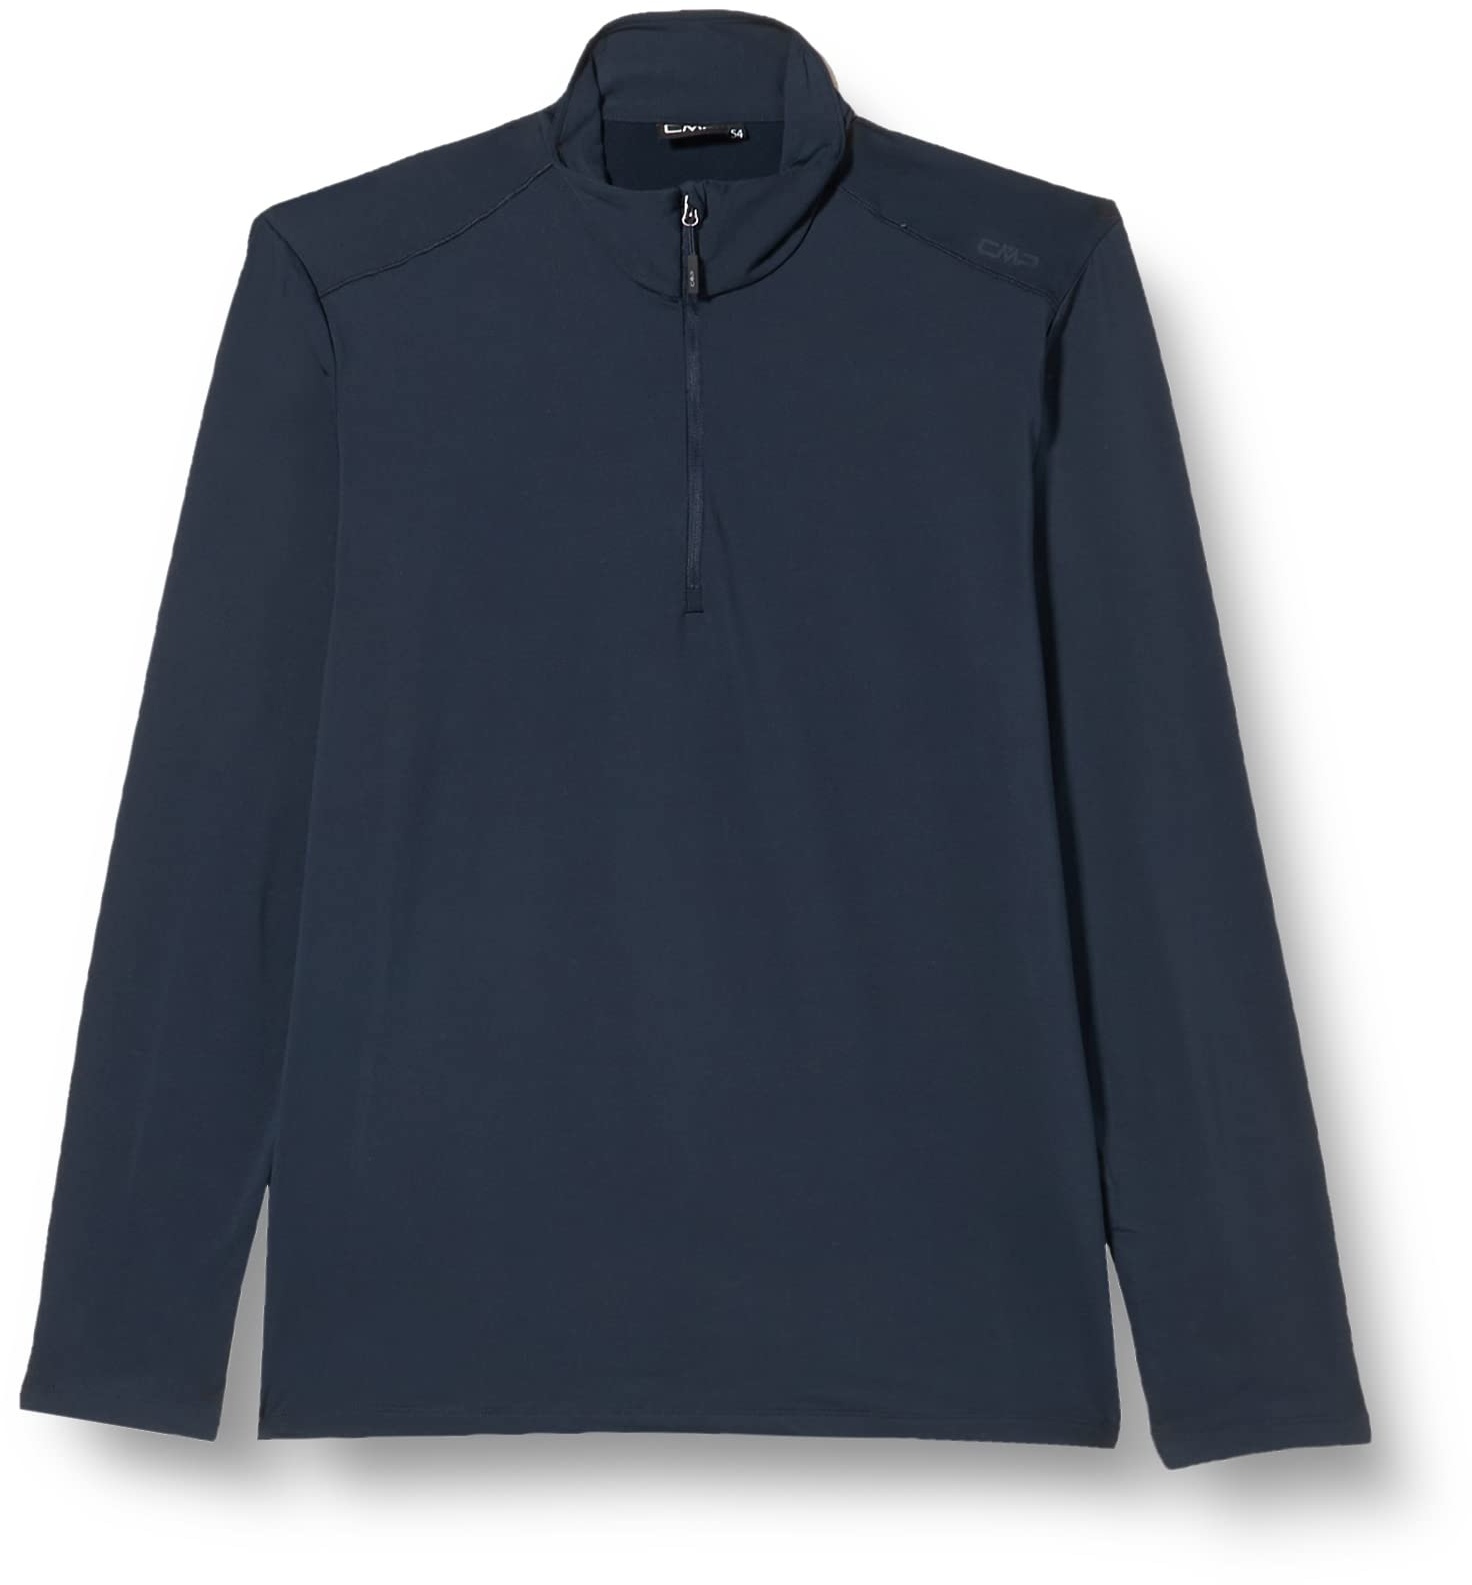 CMP - Softech-Shirt für Herren, Schwarz Blau, 58